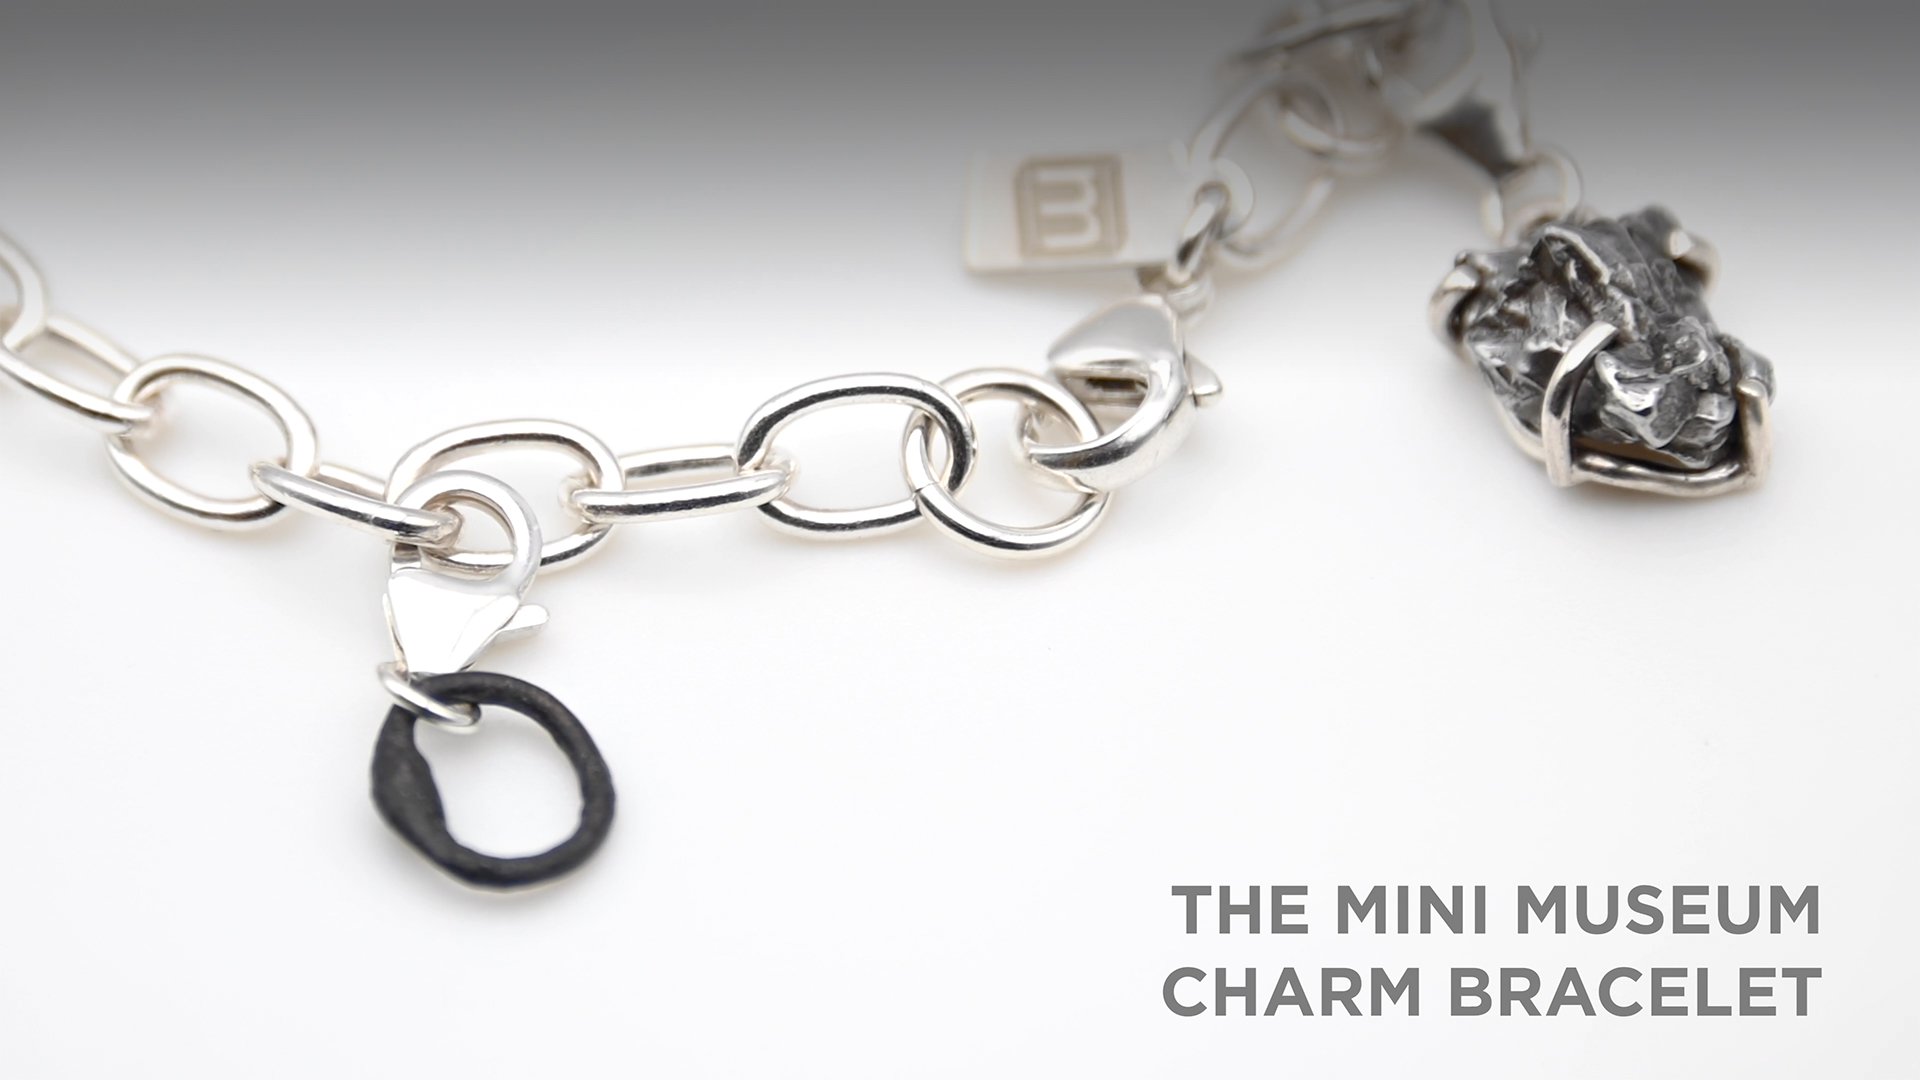 The Mini Museum Charm Bracelet